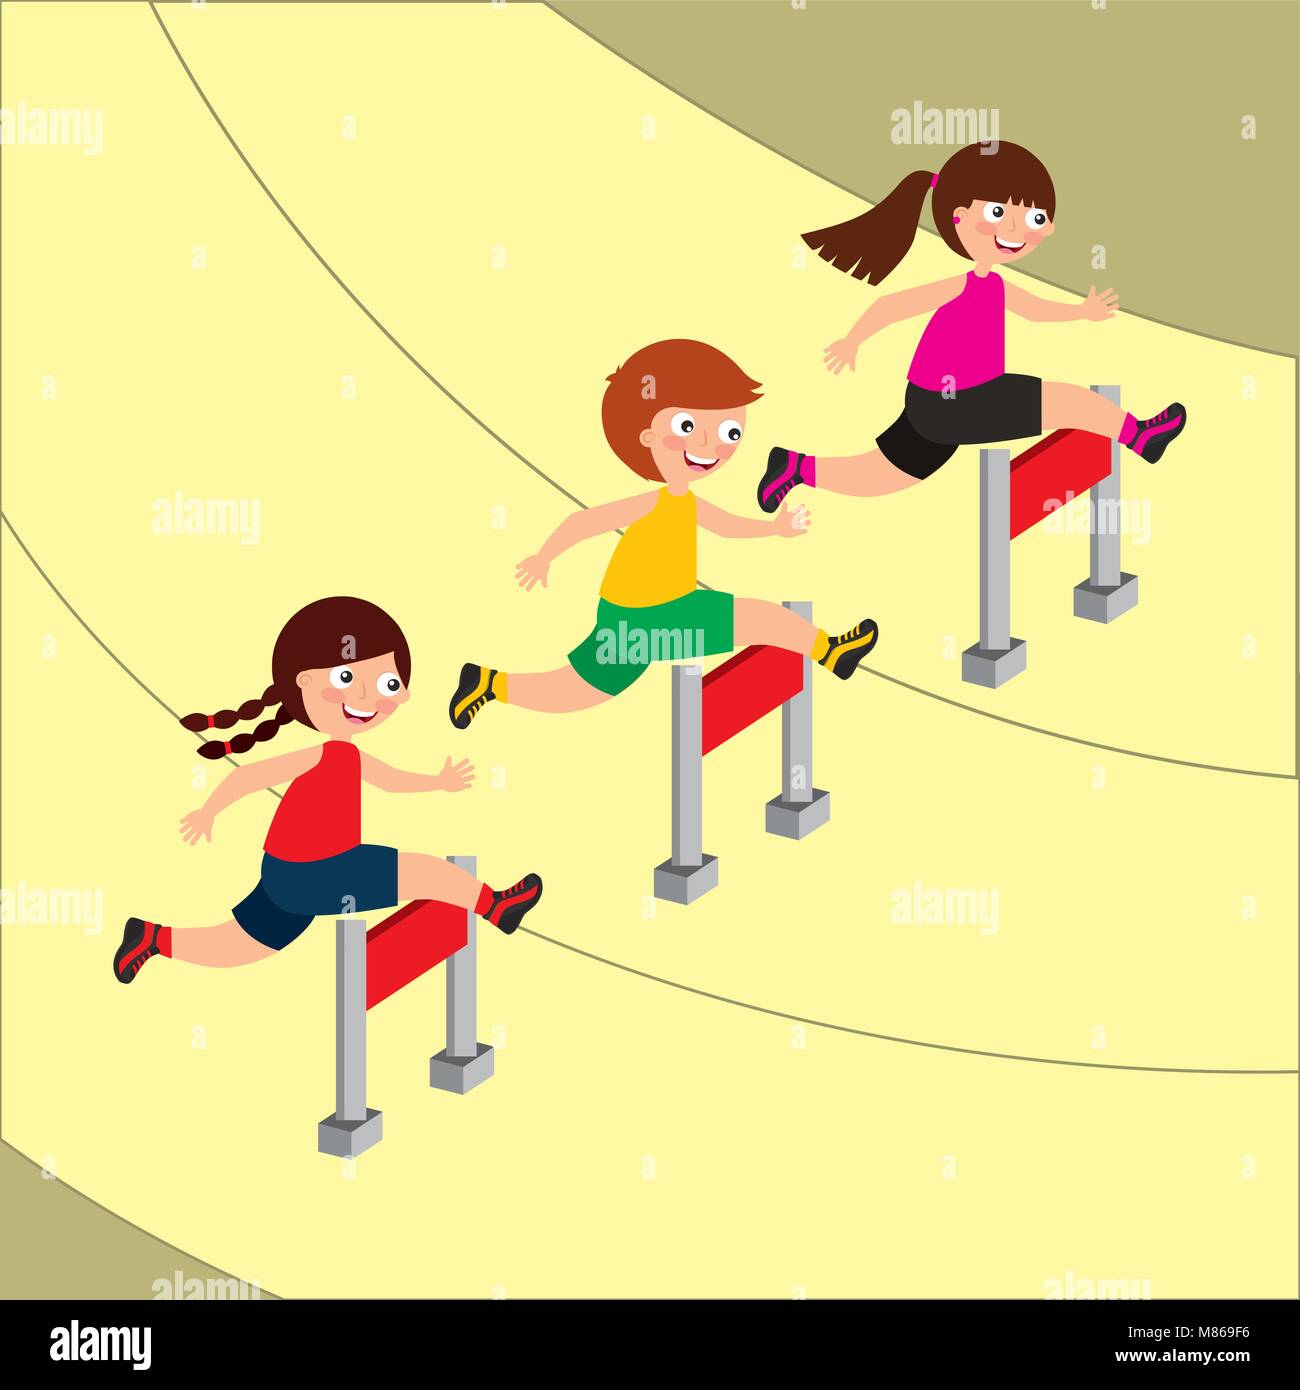 kids sport activity image Stock Vector